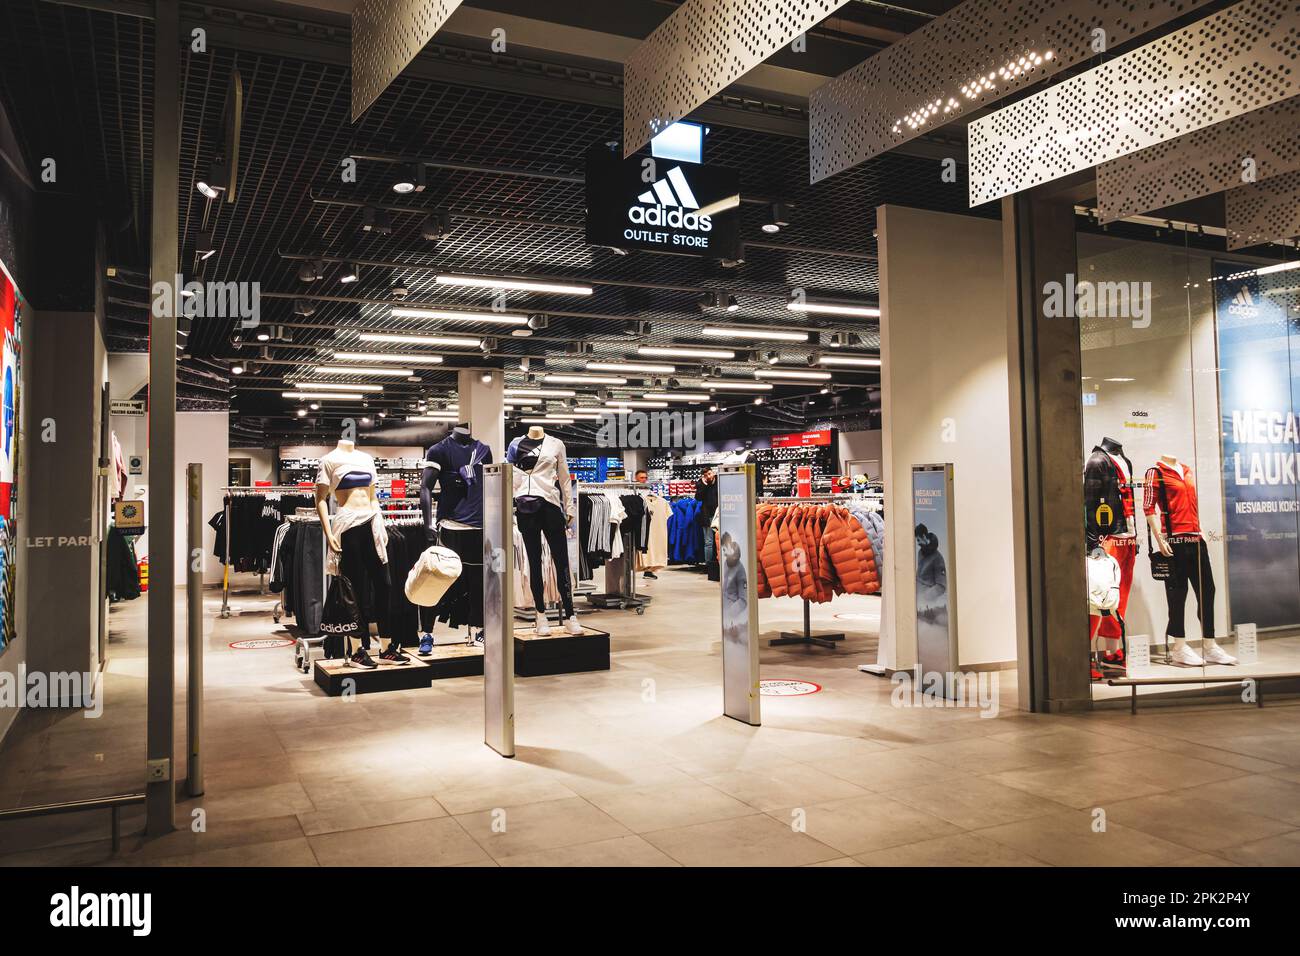 Adidas outlet store immagini e fotografie stock ad alta risoluzione - Alamy